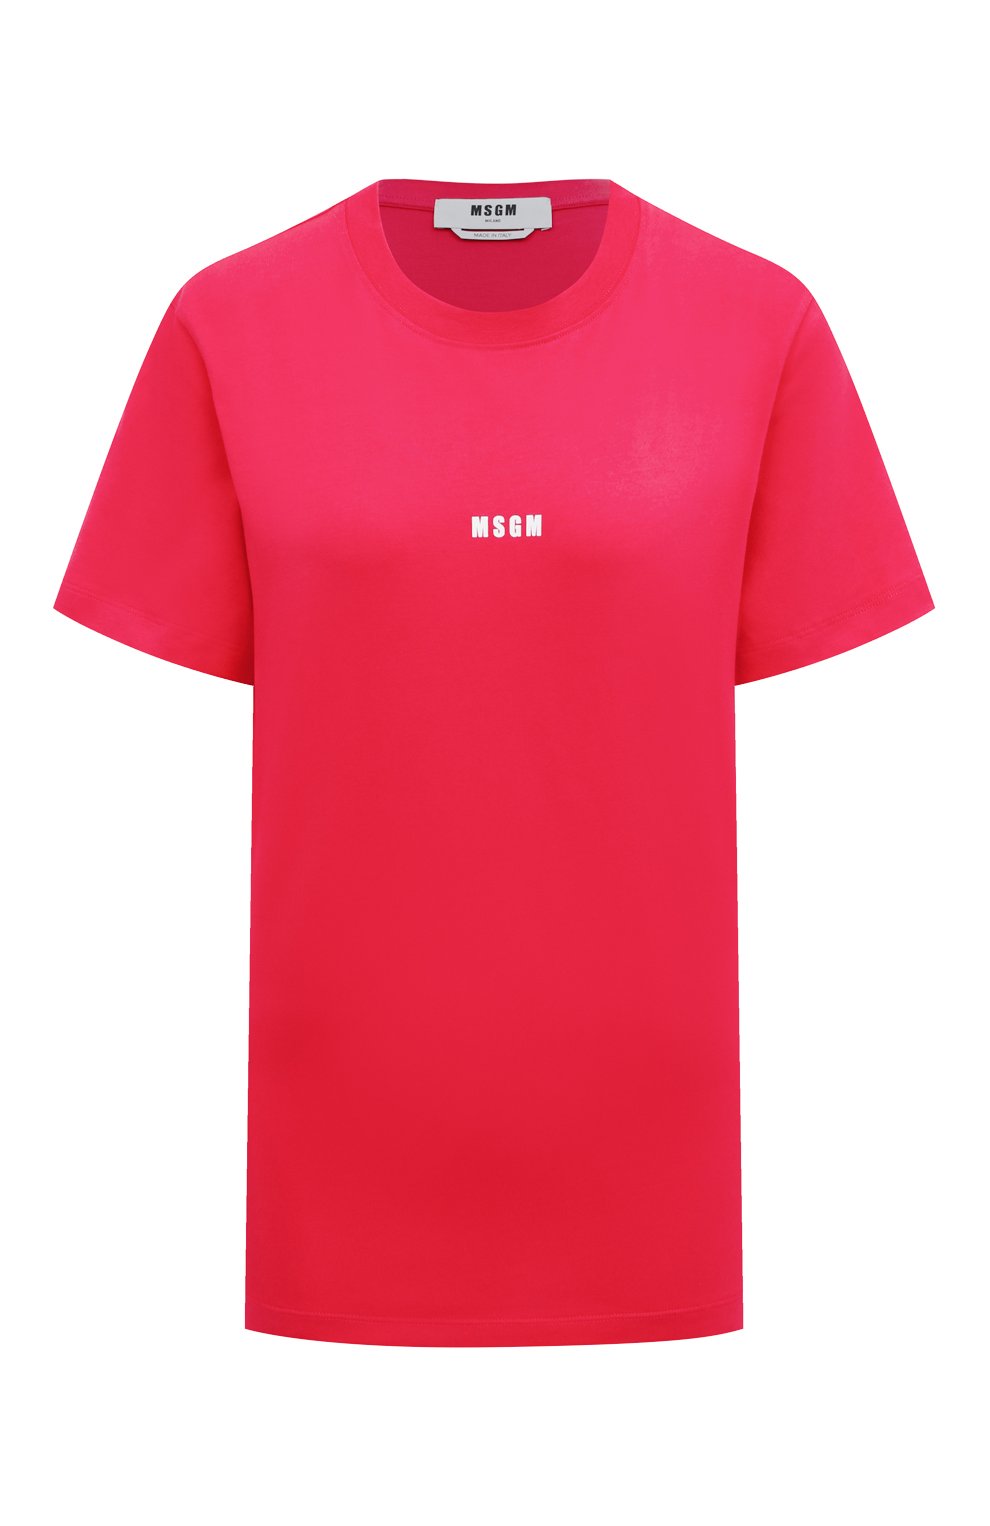 Женская хлопковая футболка MSGM фуксия цвета, арт. 3341MDM500 227798 | Фото 1 (Женское Кросс-КТ: Футболка-спорт, Футболка-одежда; Рукава: Короткие; Длина (для топов): Стандартные; Материал внешний: Хлопок; Стили: Спорт-шик)